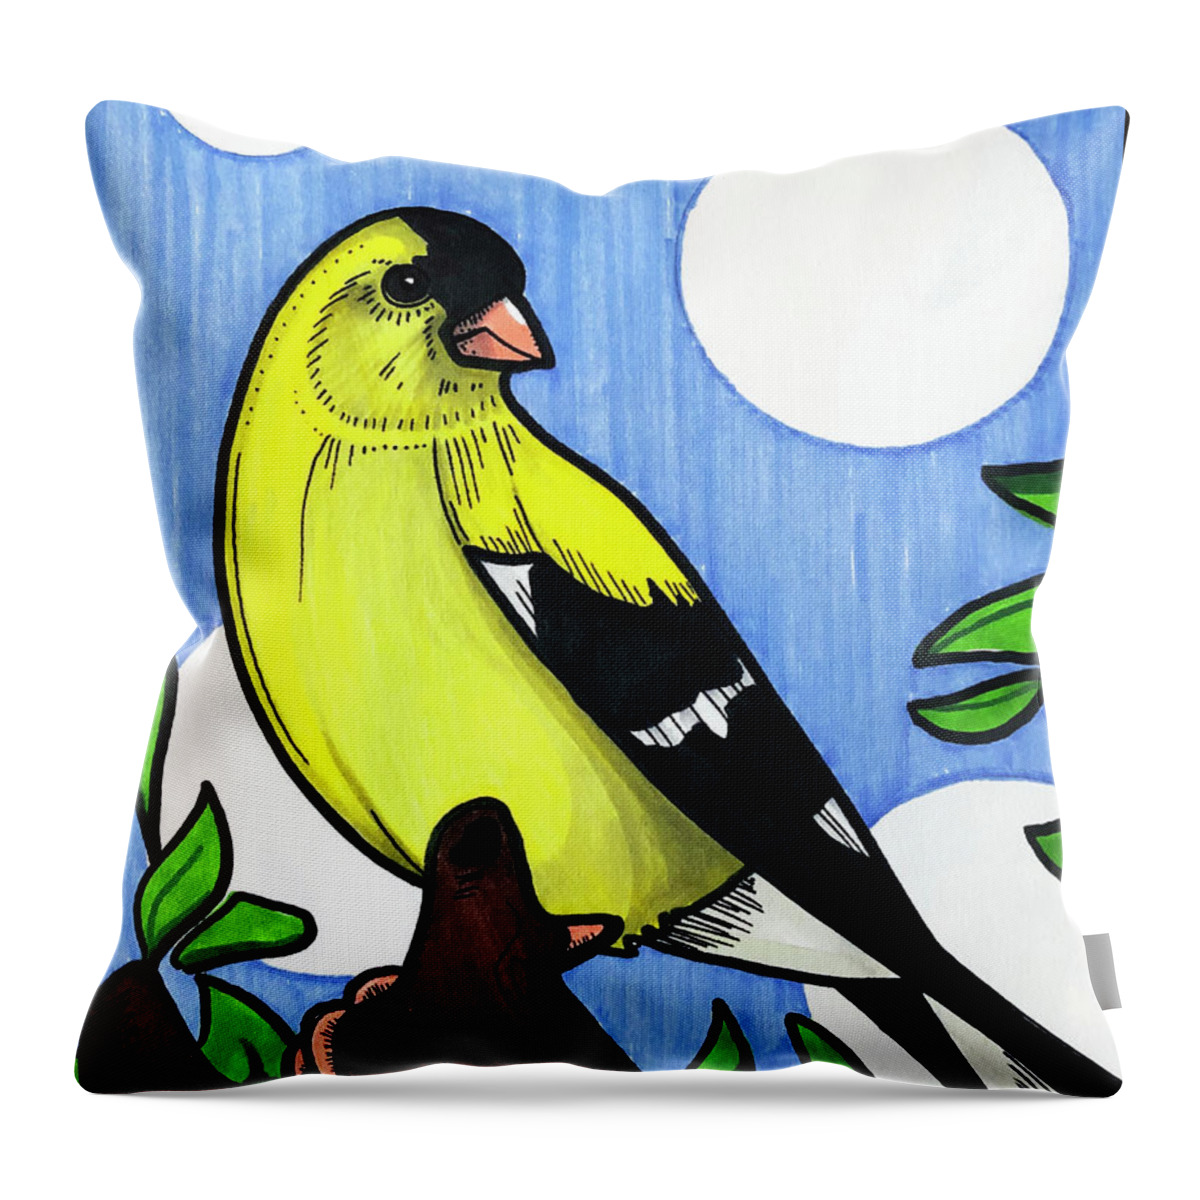 Yellow Cardinal Throw Pillow featuring the drawing Yellow Cardinal by Creative Spirit